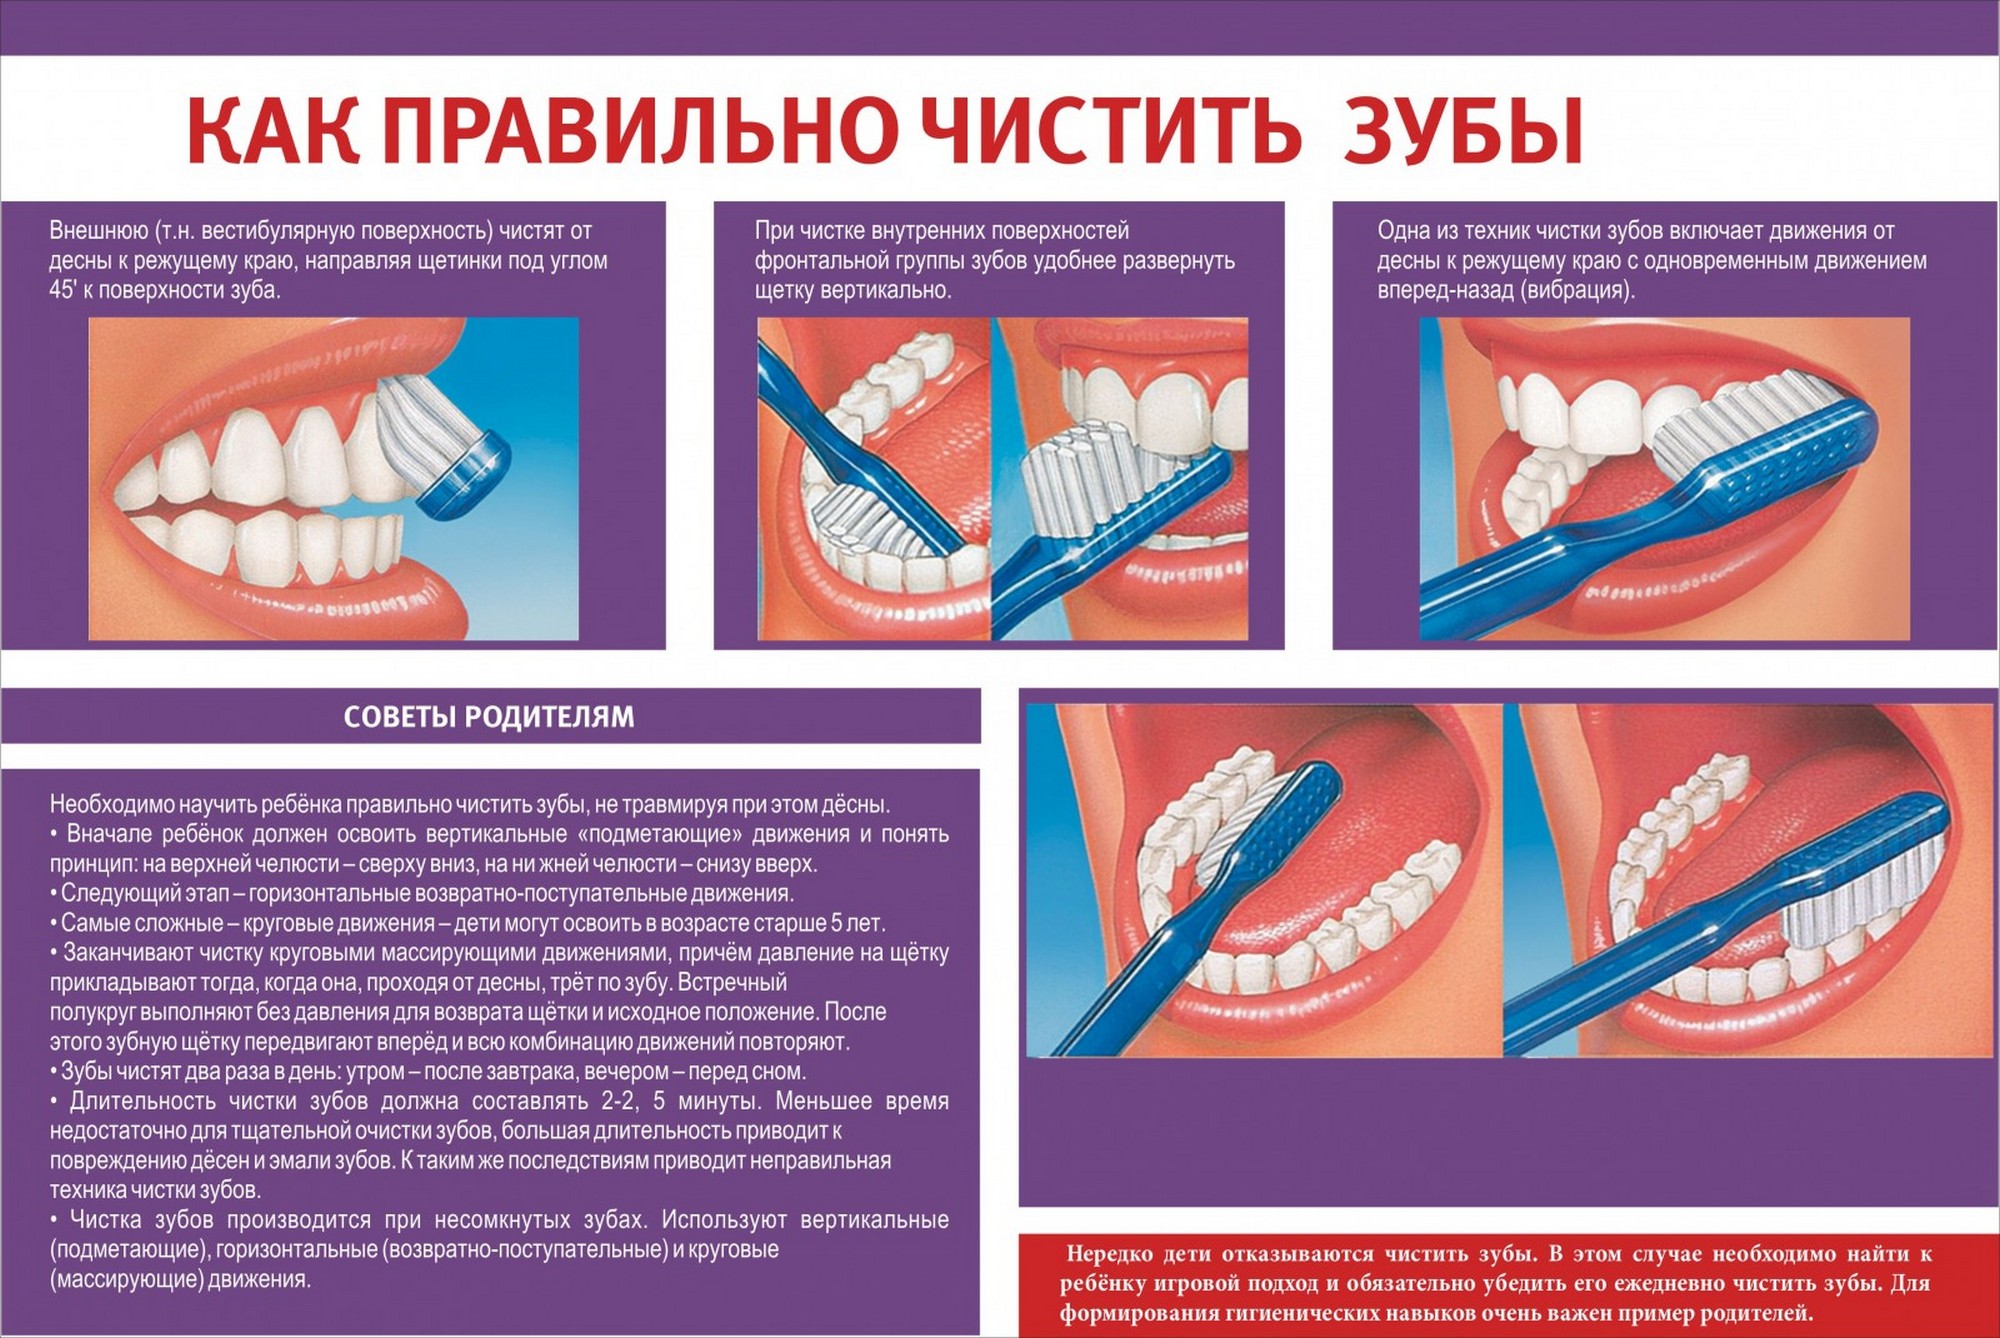 Сколько чистка зубов по времени у стоматолога. Как правильно чистить зубы. Памятка чистки зубов. Стенд стоматология. Памятка о правильной чистке зубов.